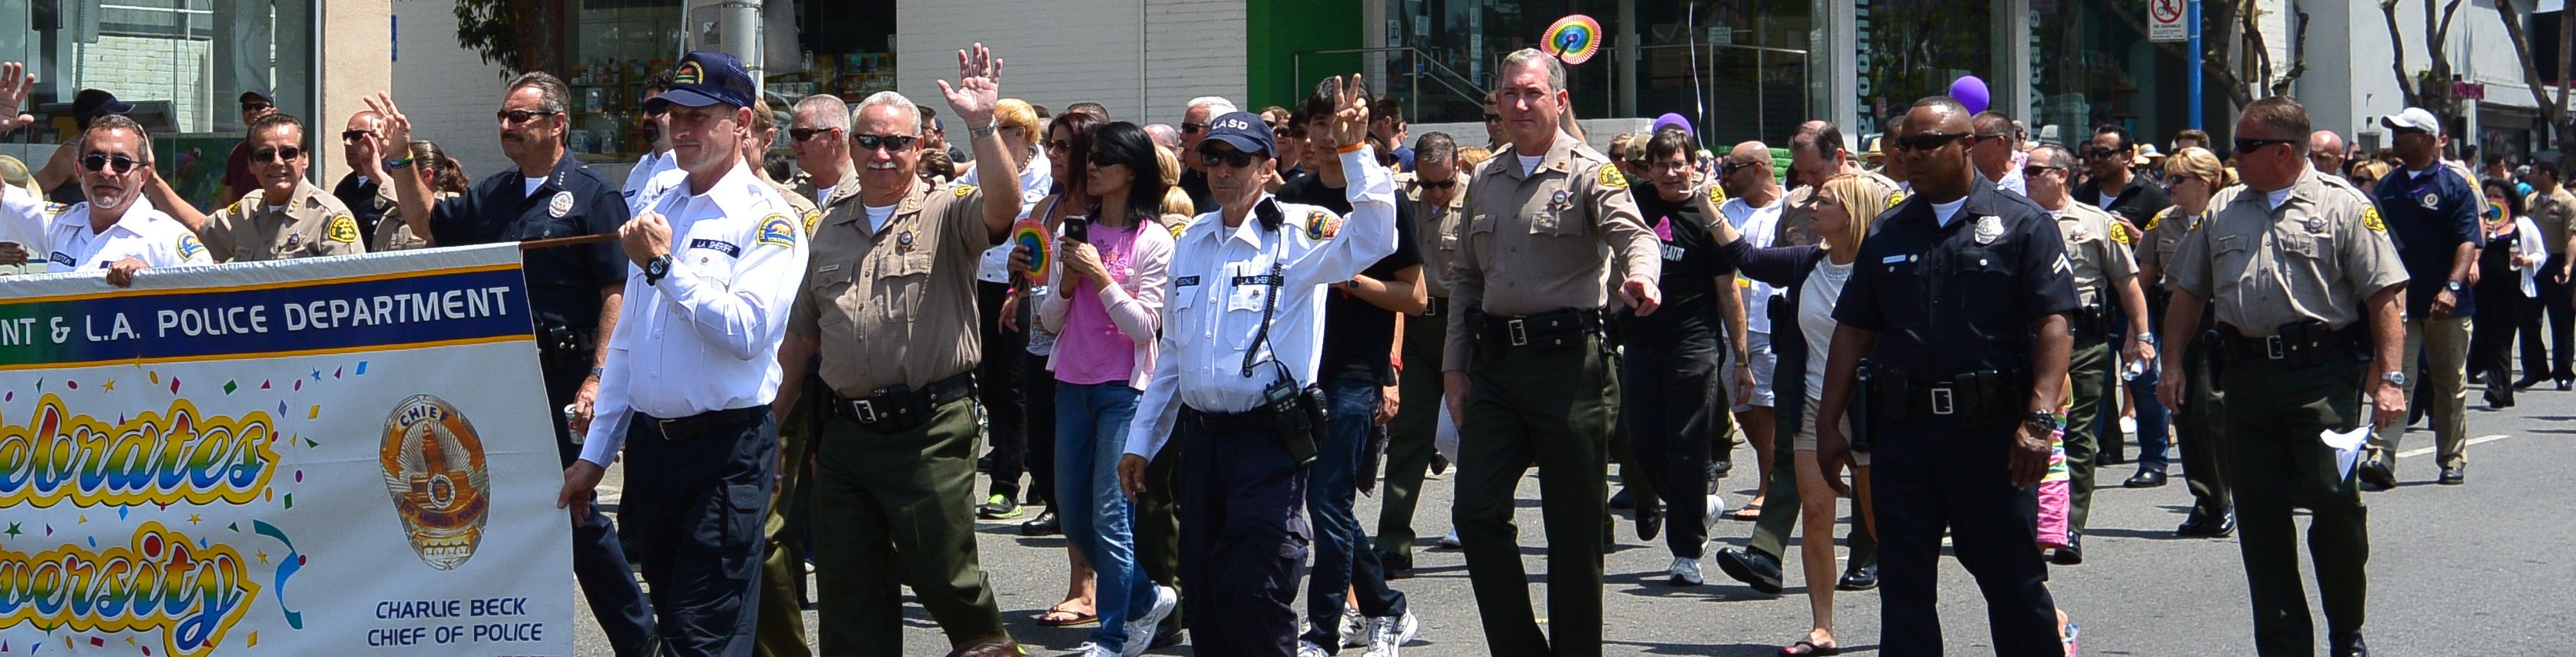 2014 LA Pride parade